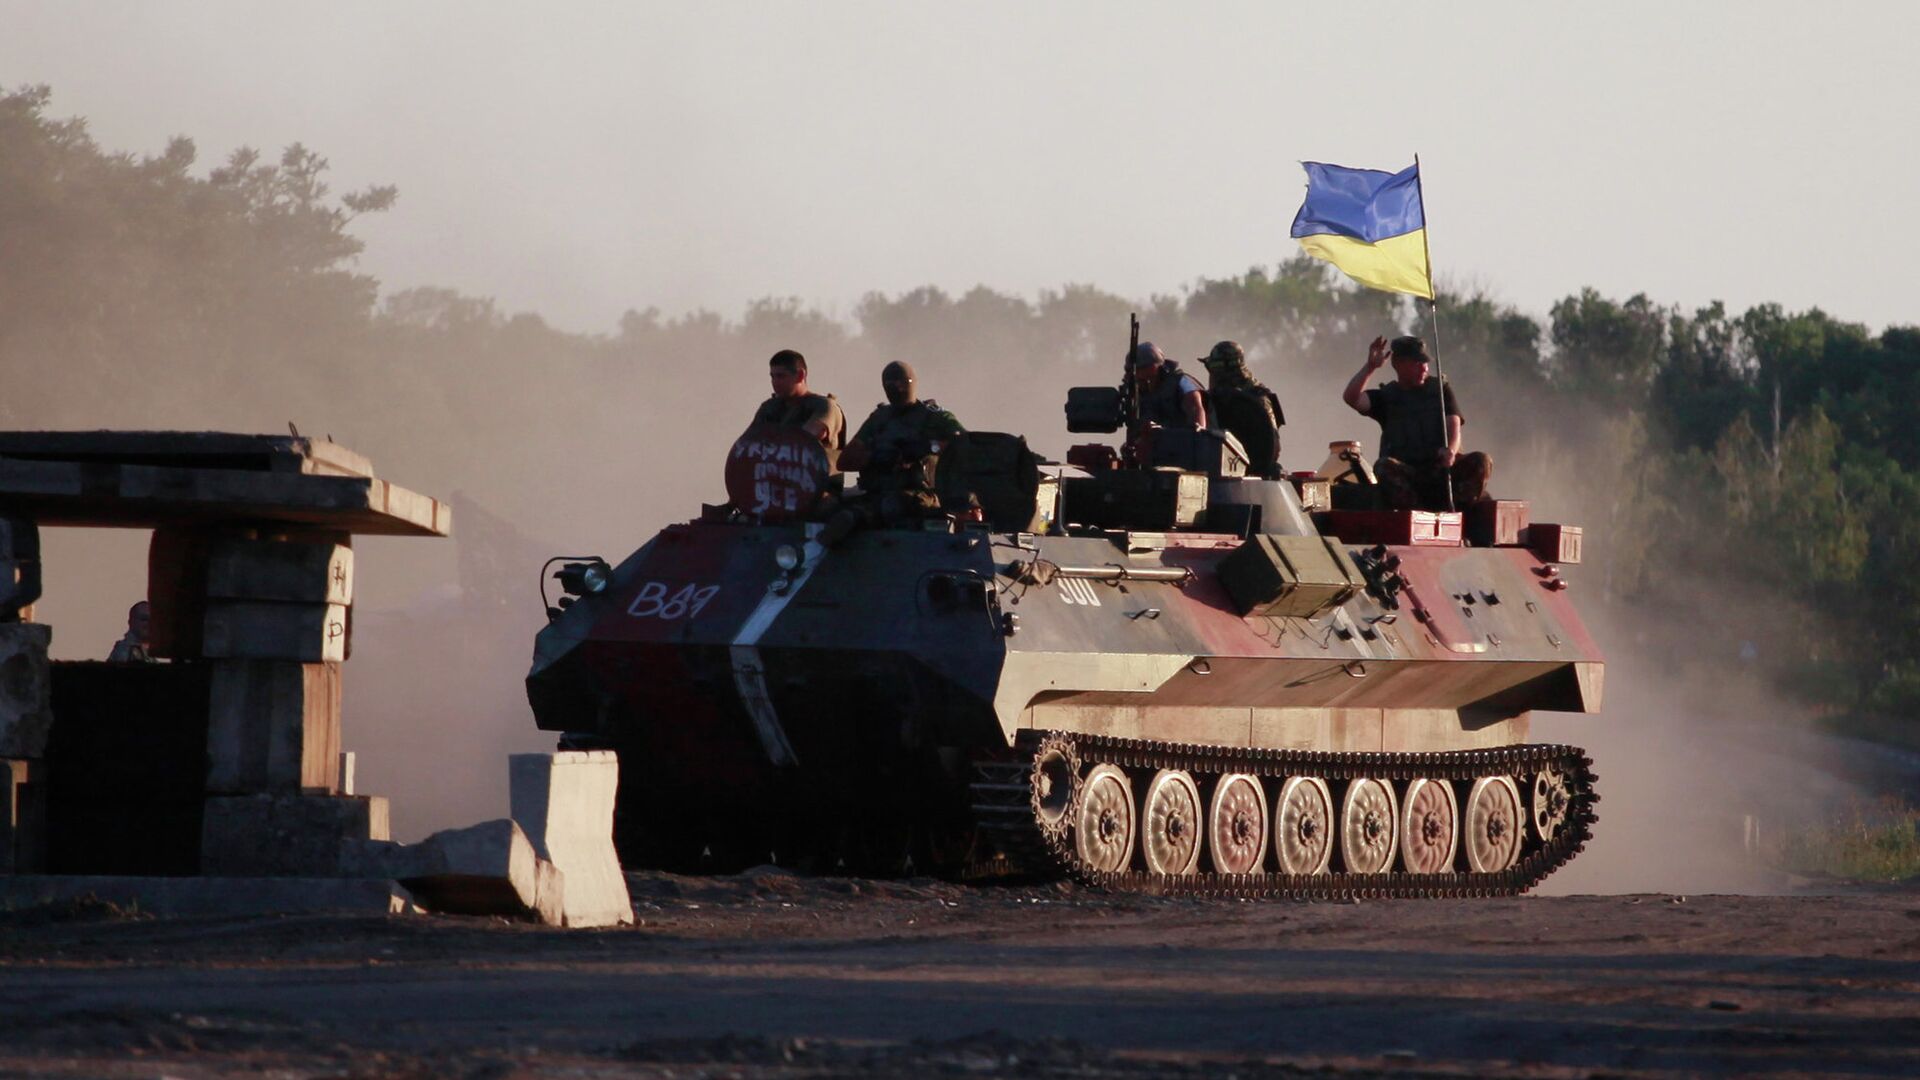 Наше наступление на украине сегодня. Американские танки на Украине. Российские военные на Украине. Конфликт на востоке Украины. Z на военной технике.